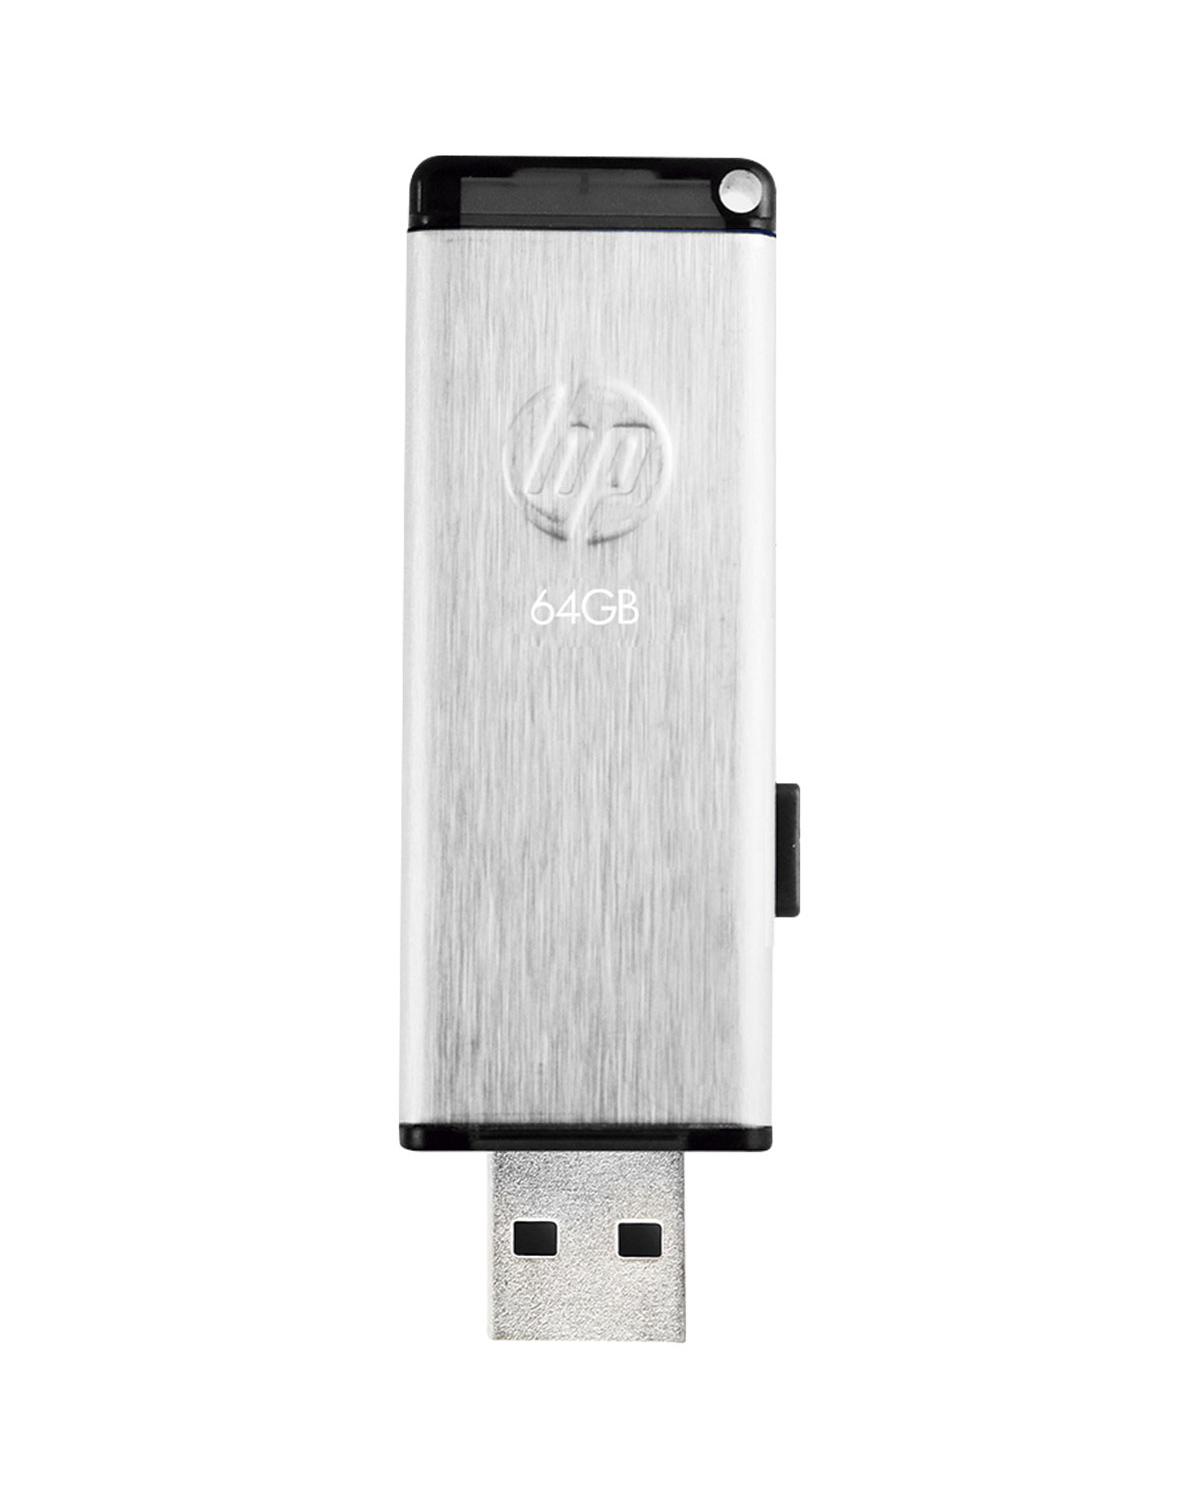 PEN DRIVE HP USB 2.0 V257W 64GB HPFD257W-64